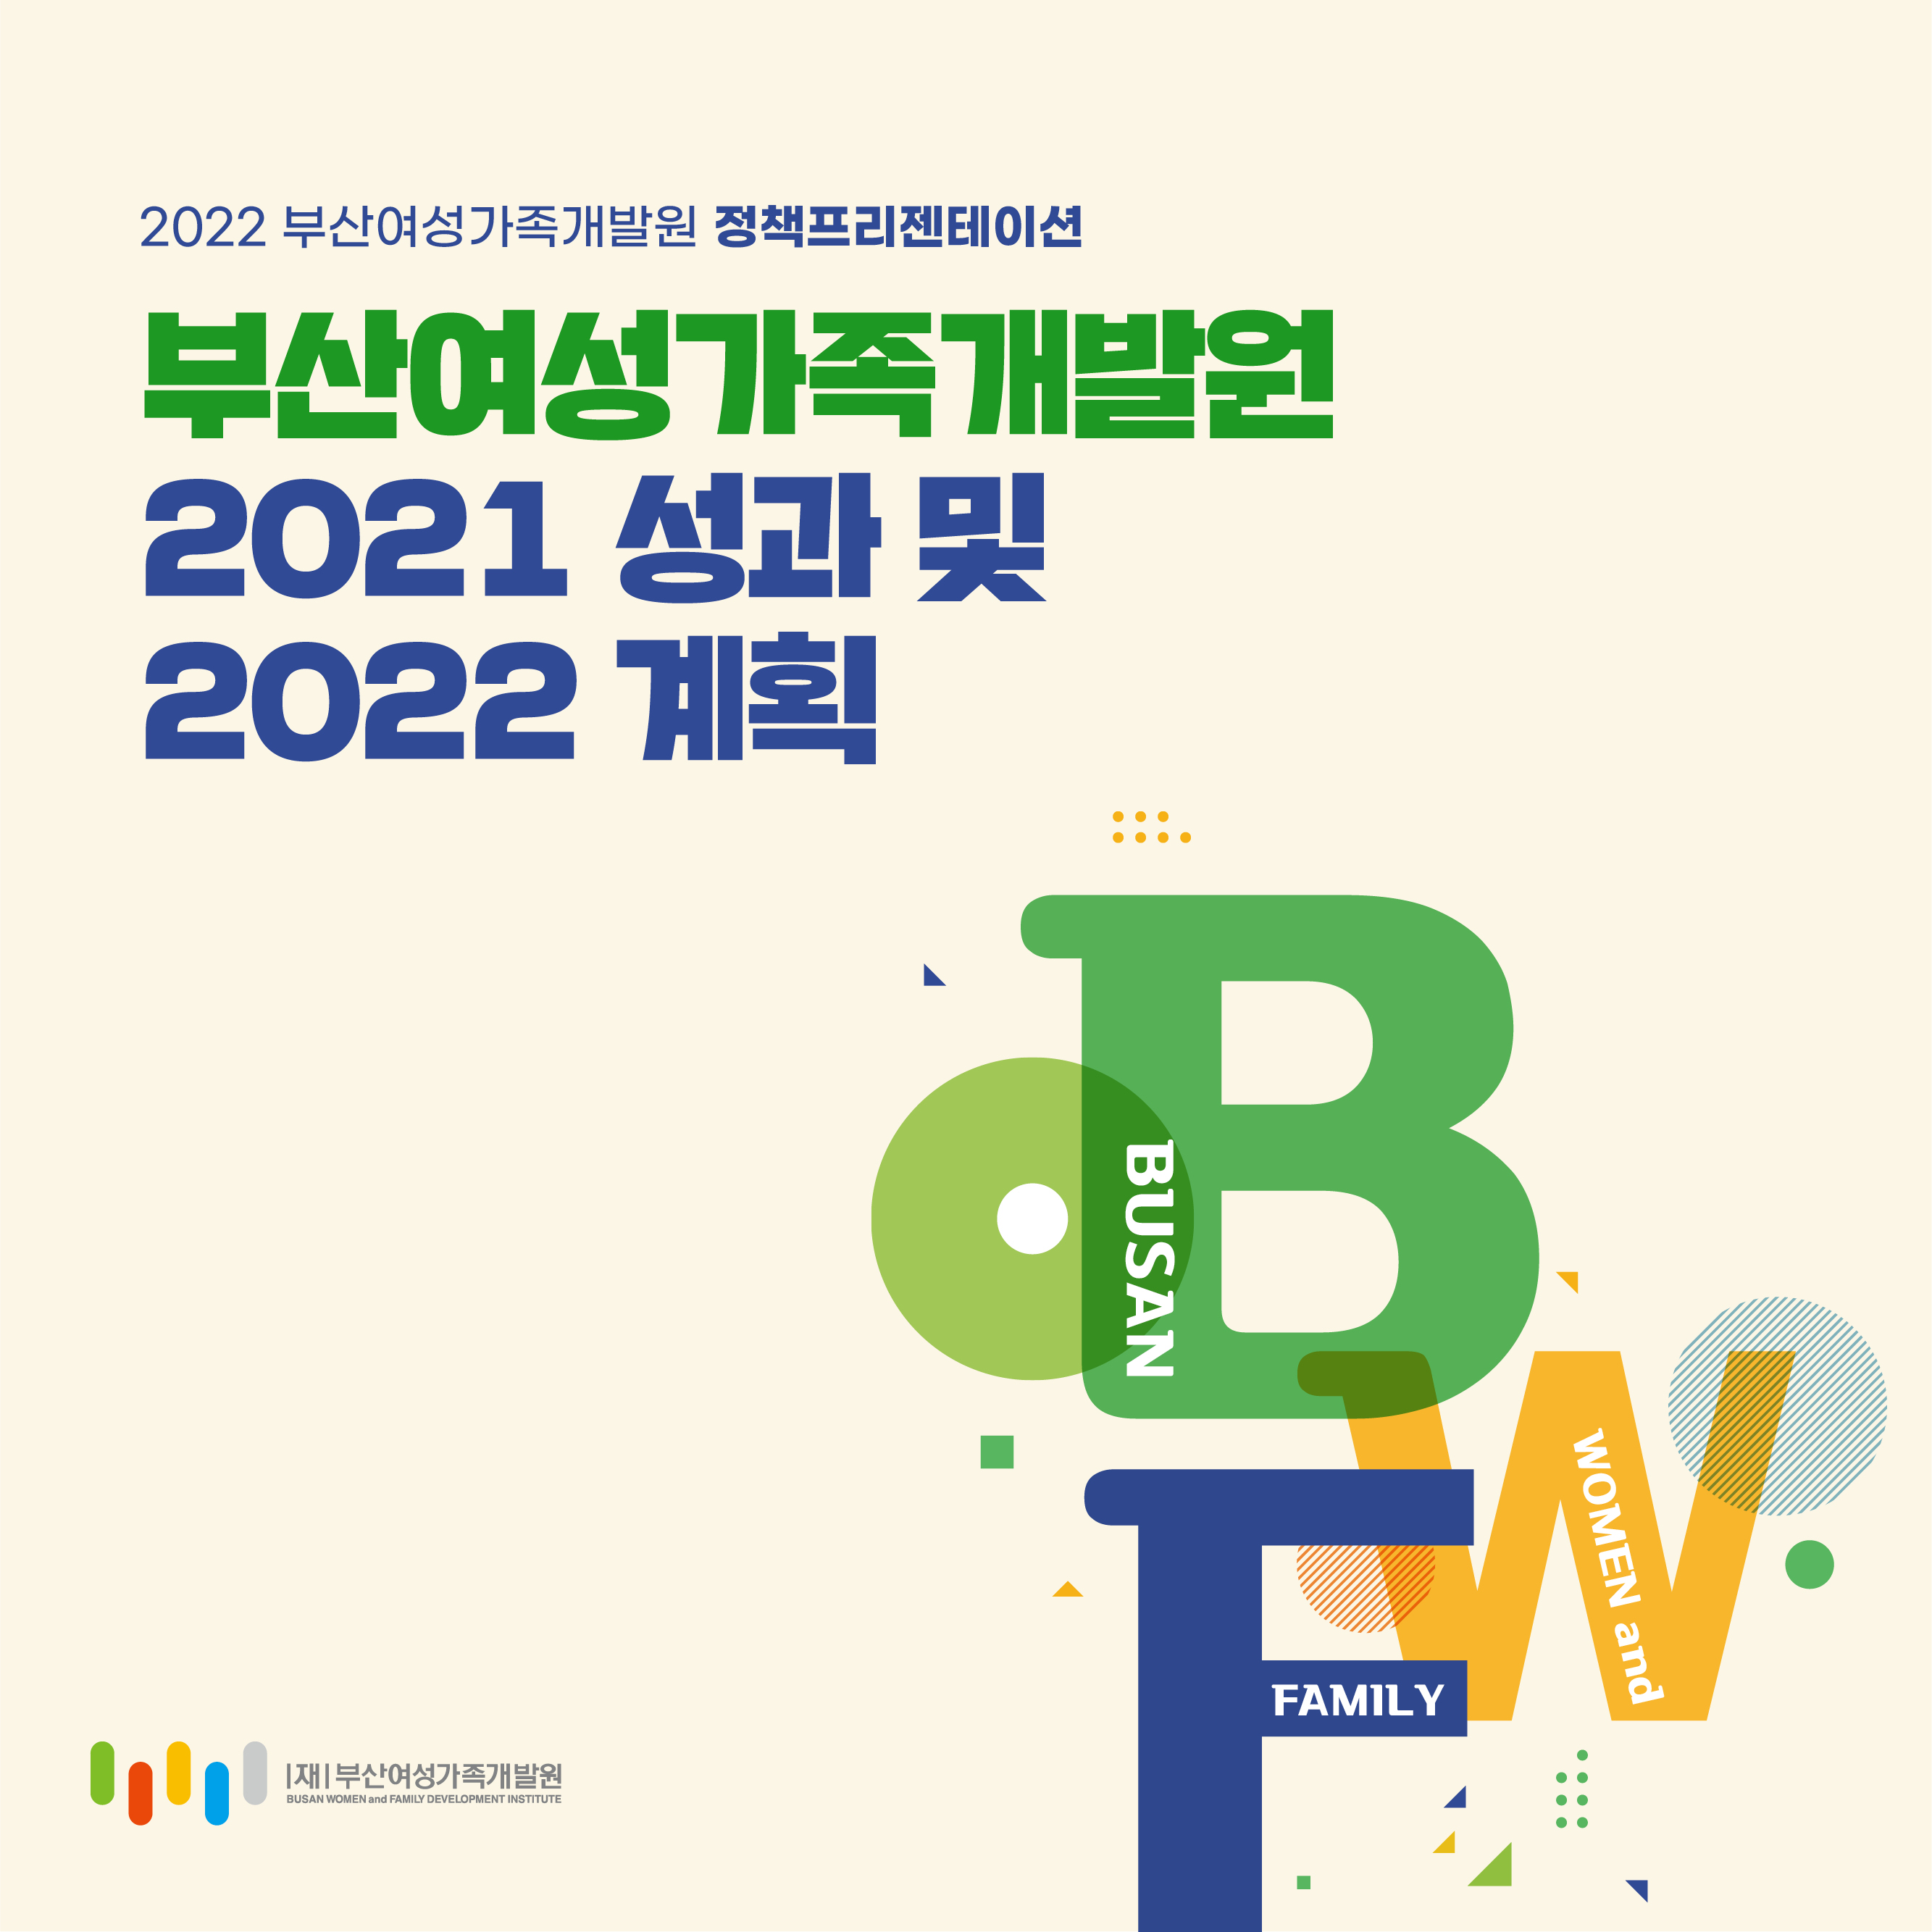 2021성과 및 2022계획 1